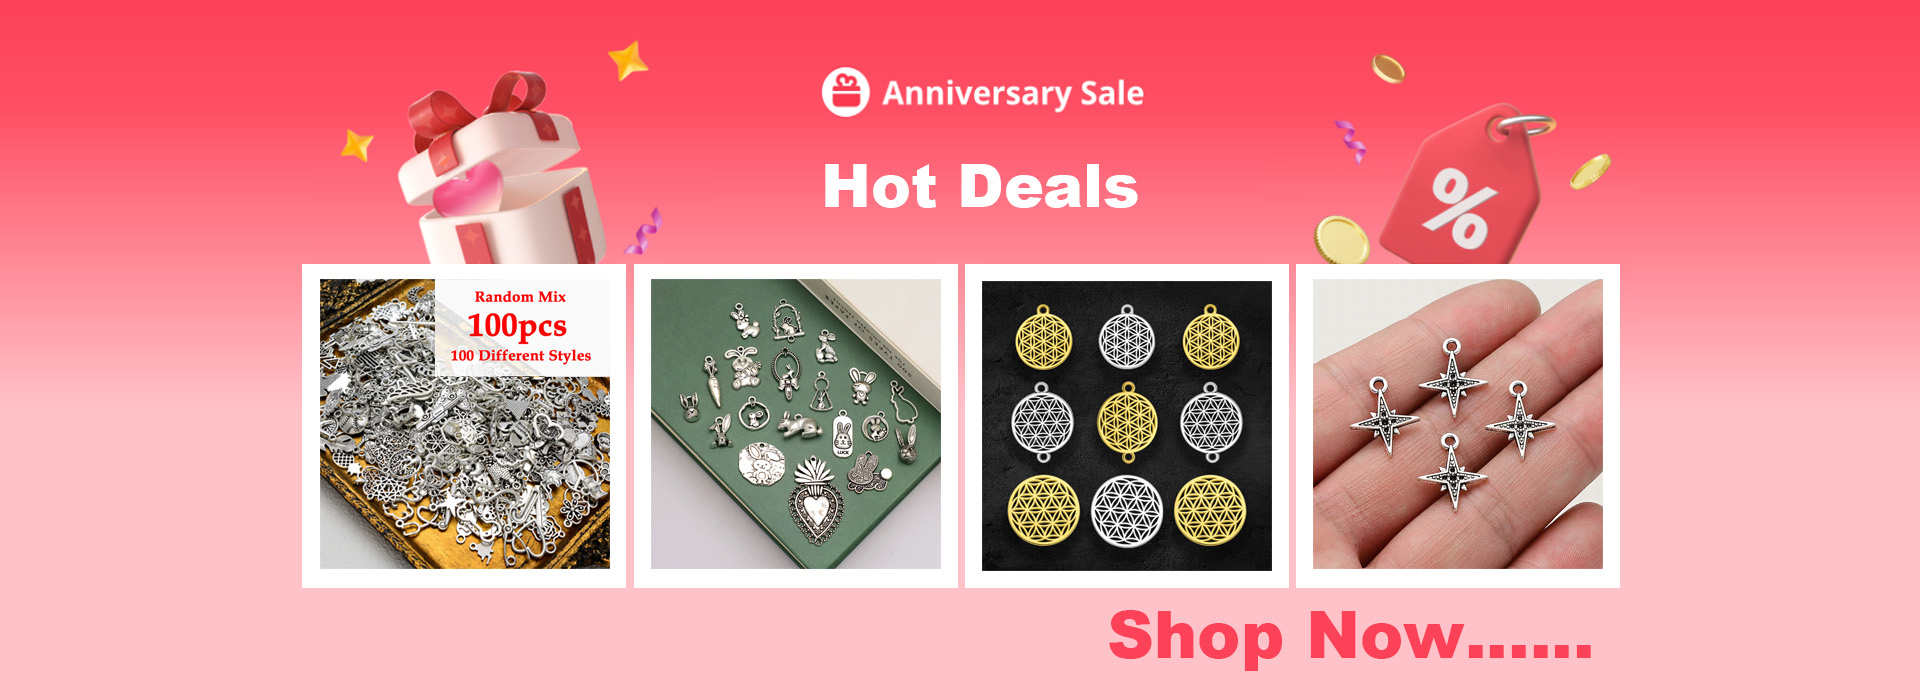 Angelwing accessories Store - Onlineshop für kleine Bestellungen, populäre  und mehr, auf AliExpress